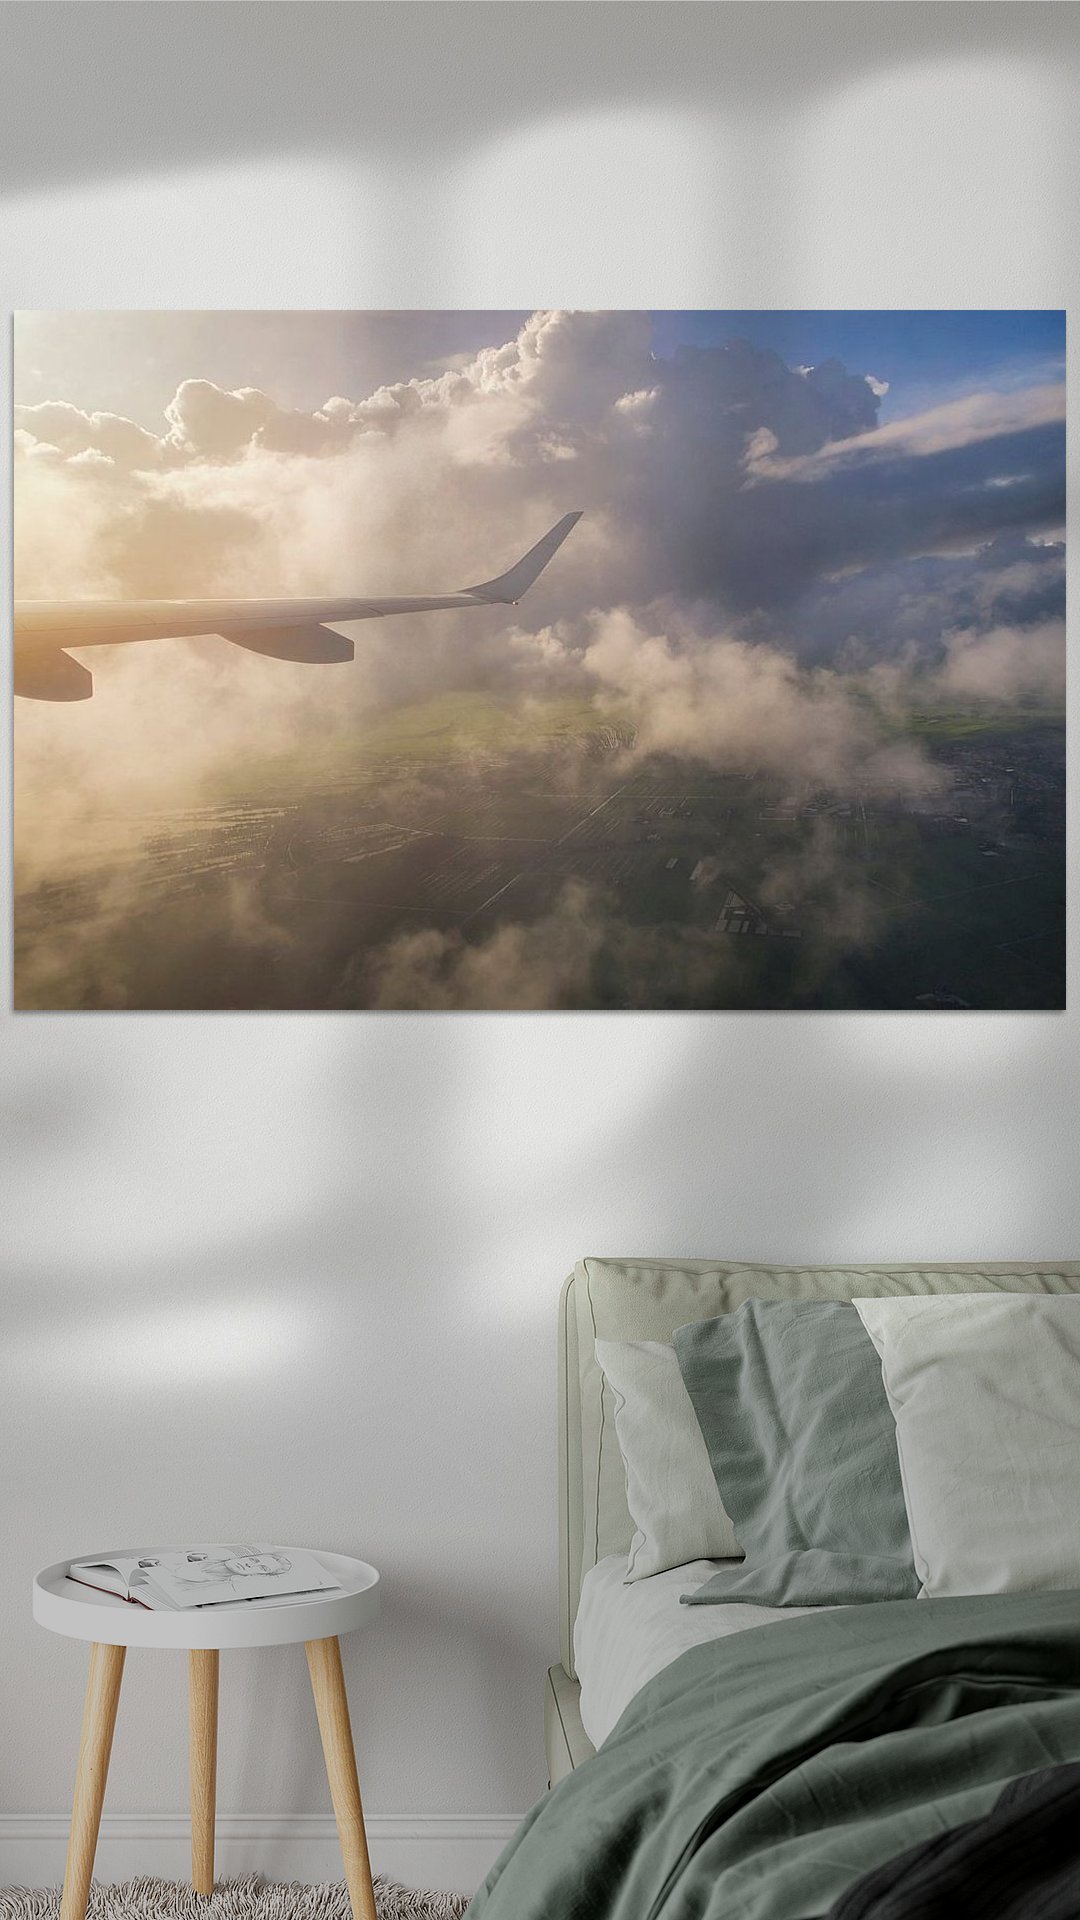 Werk aan de Muur-369827-Landschap uitzicht vliegtuig tijdens zonsopkomst-Marcel Kerdijk-1080x1920-Slaapkamer groen dekbed-instagramReel.jpg